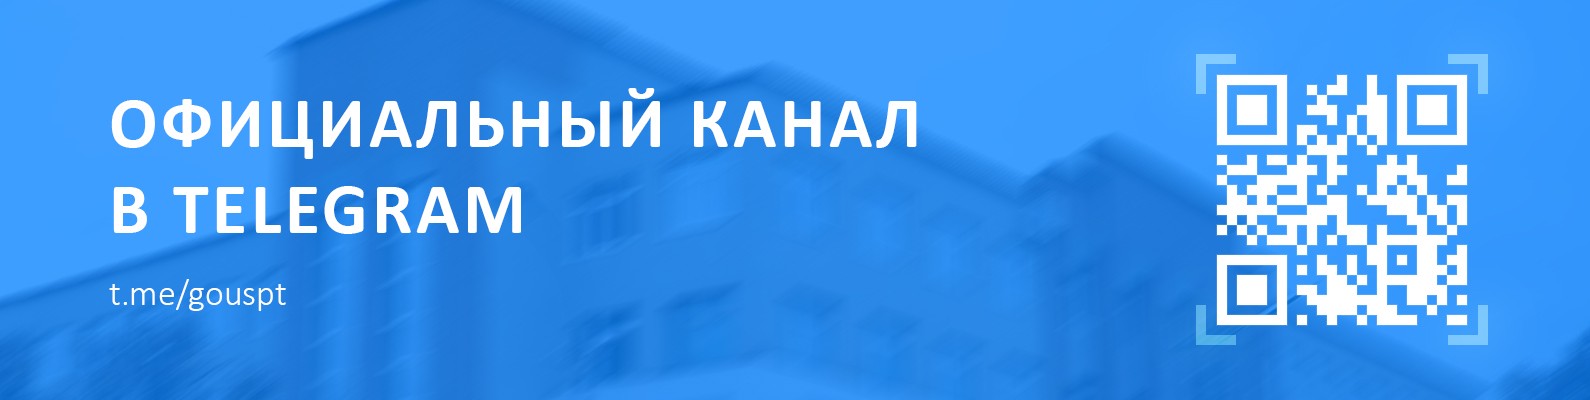 Официальный телеграм-канал "СПТ | Саранский политех"